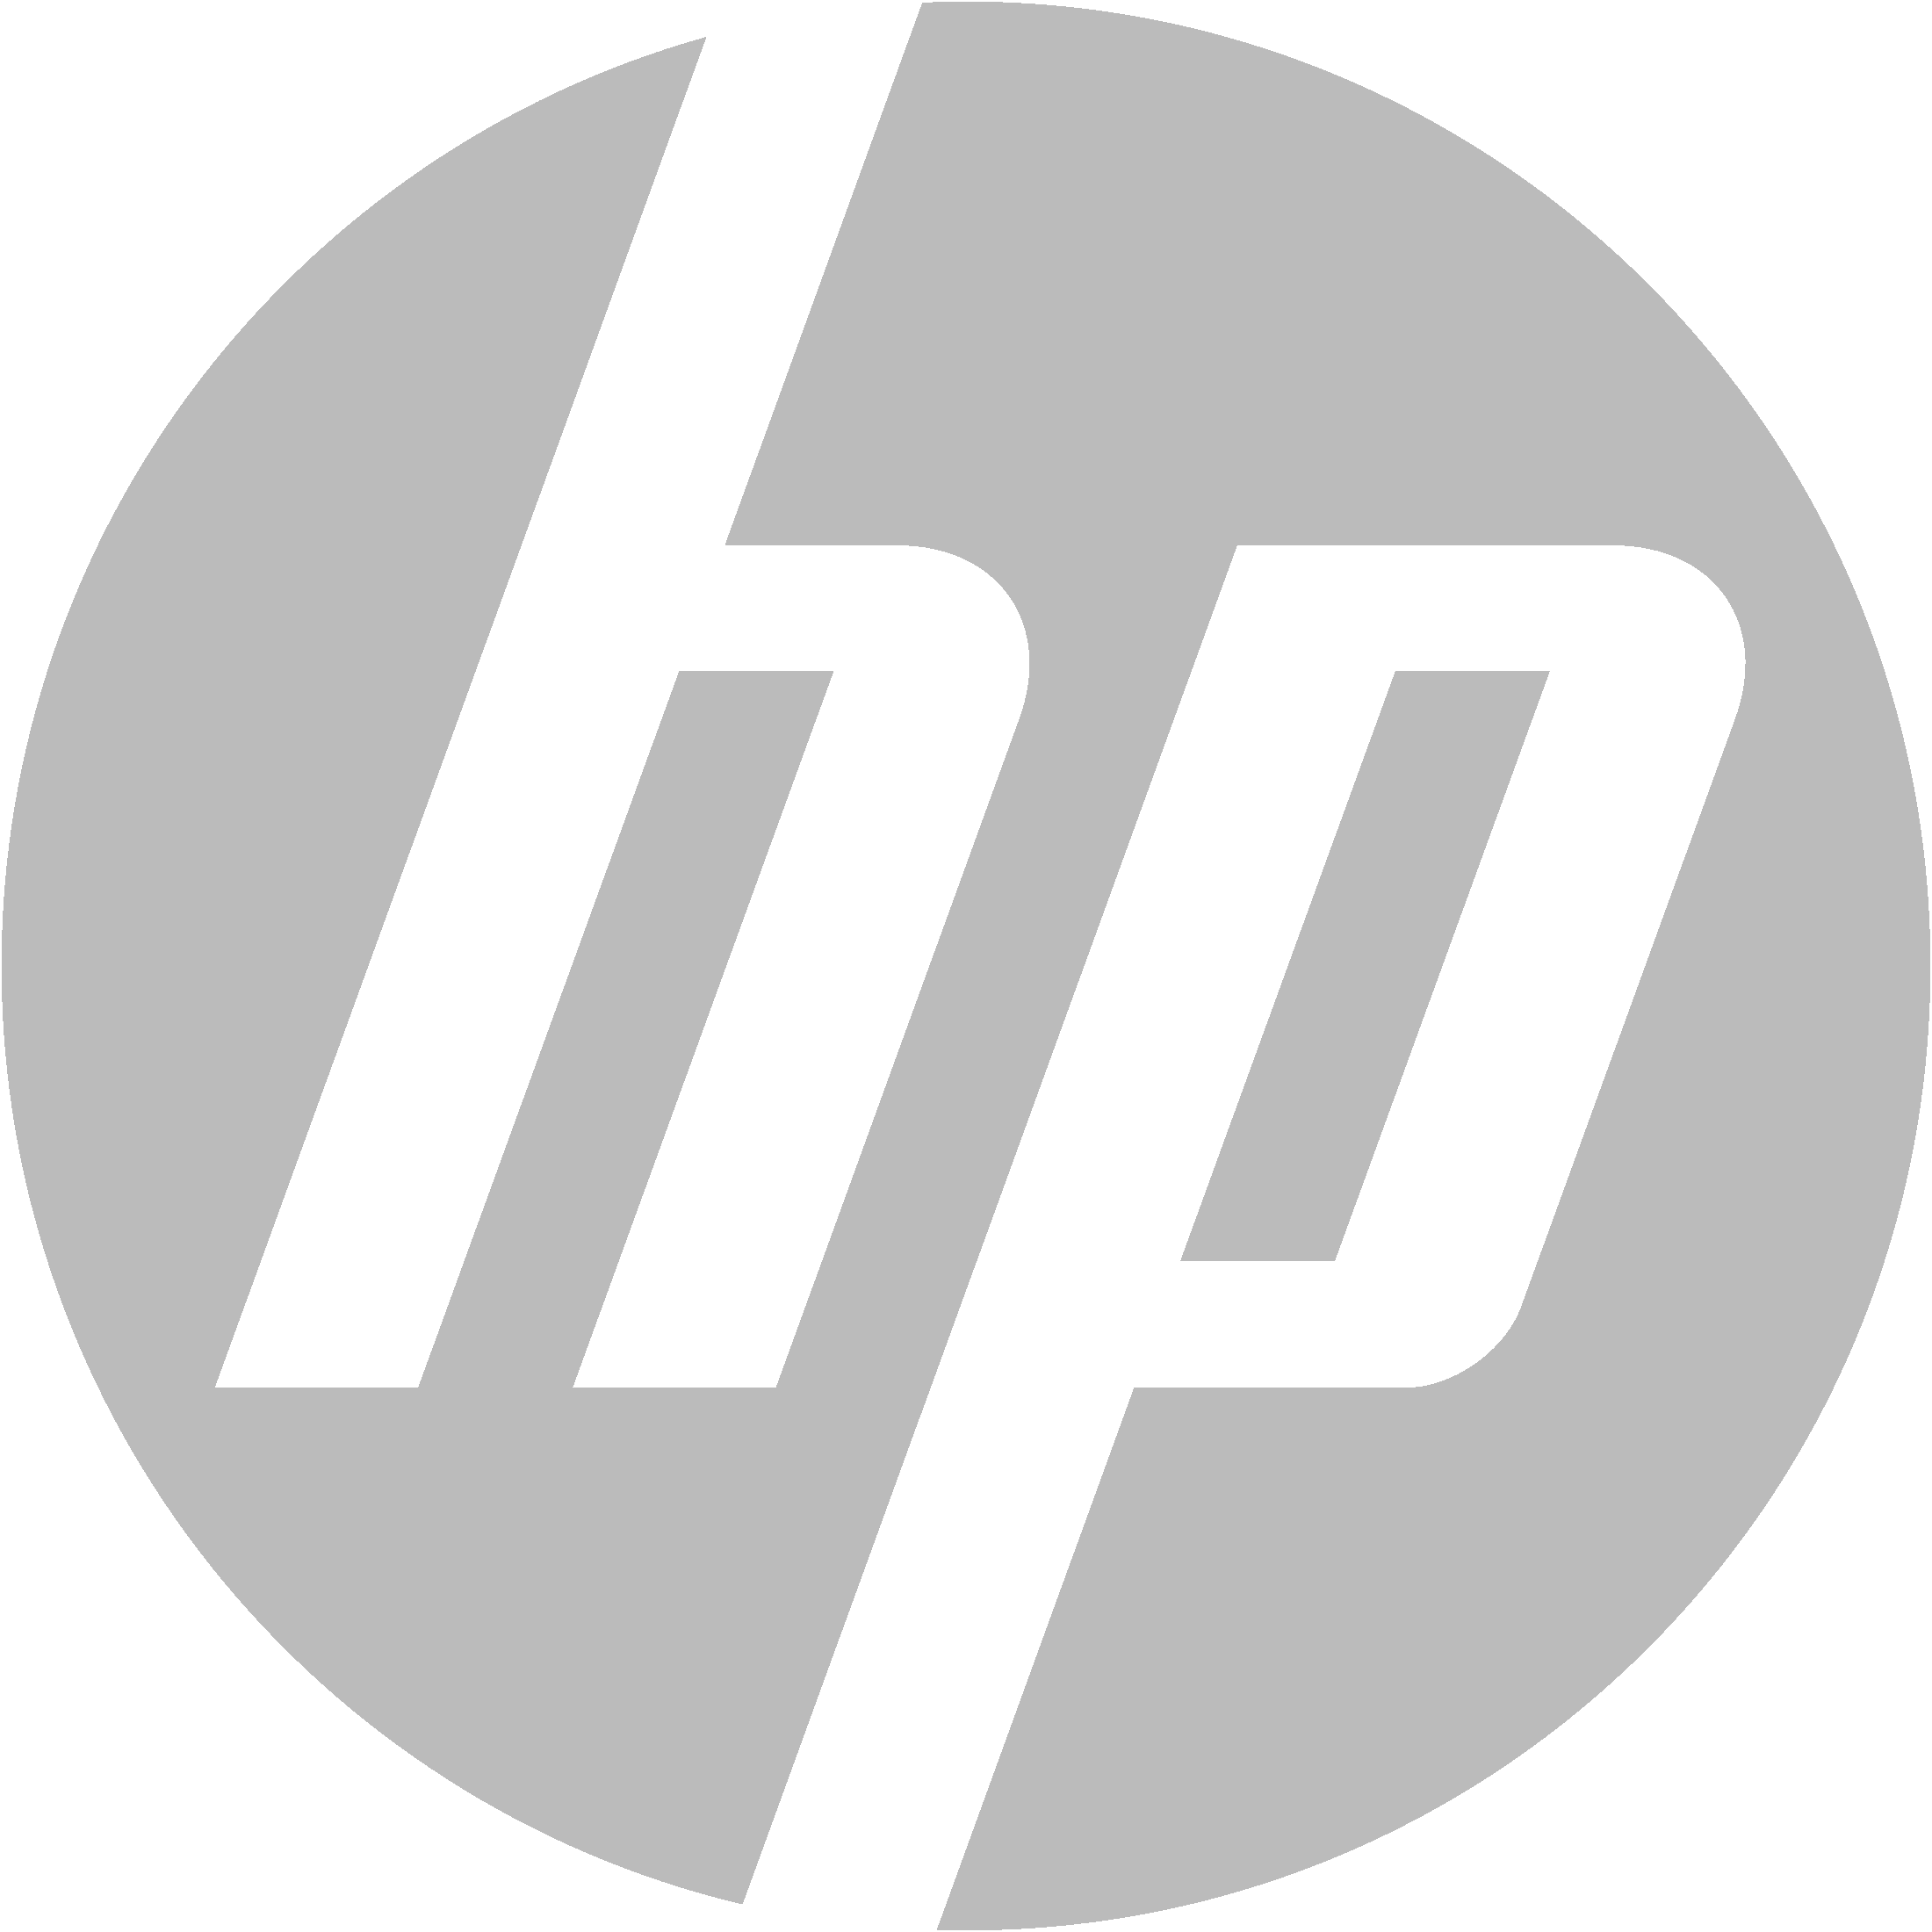 hewlett-packard-logo.png